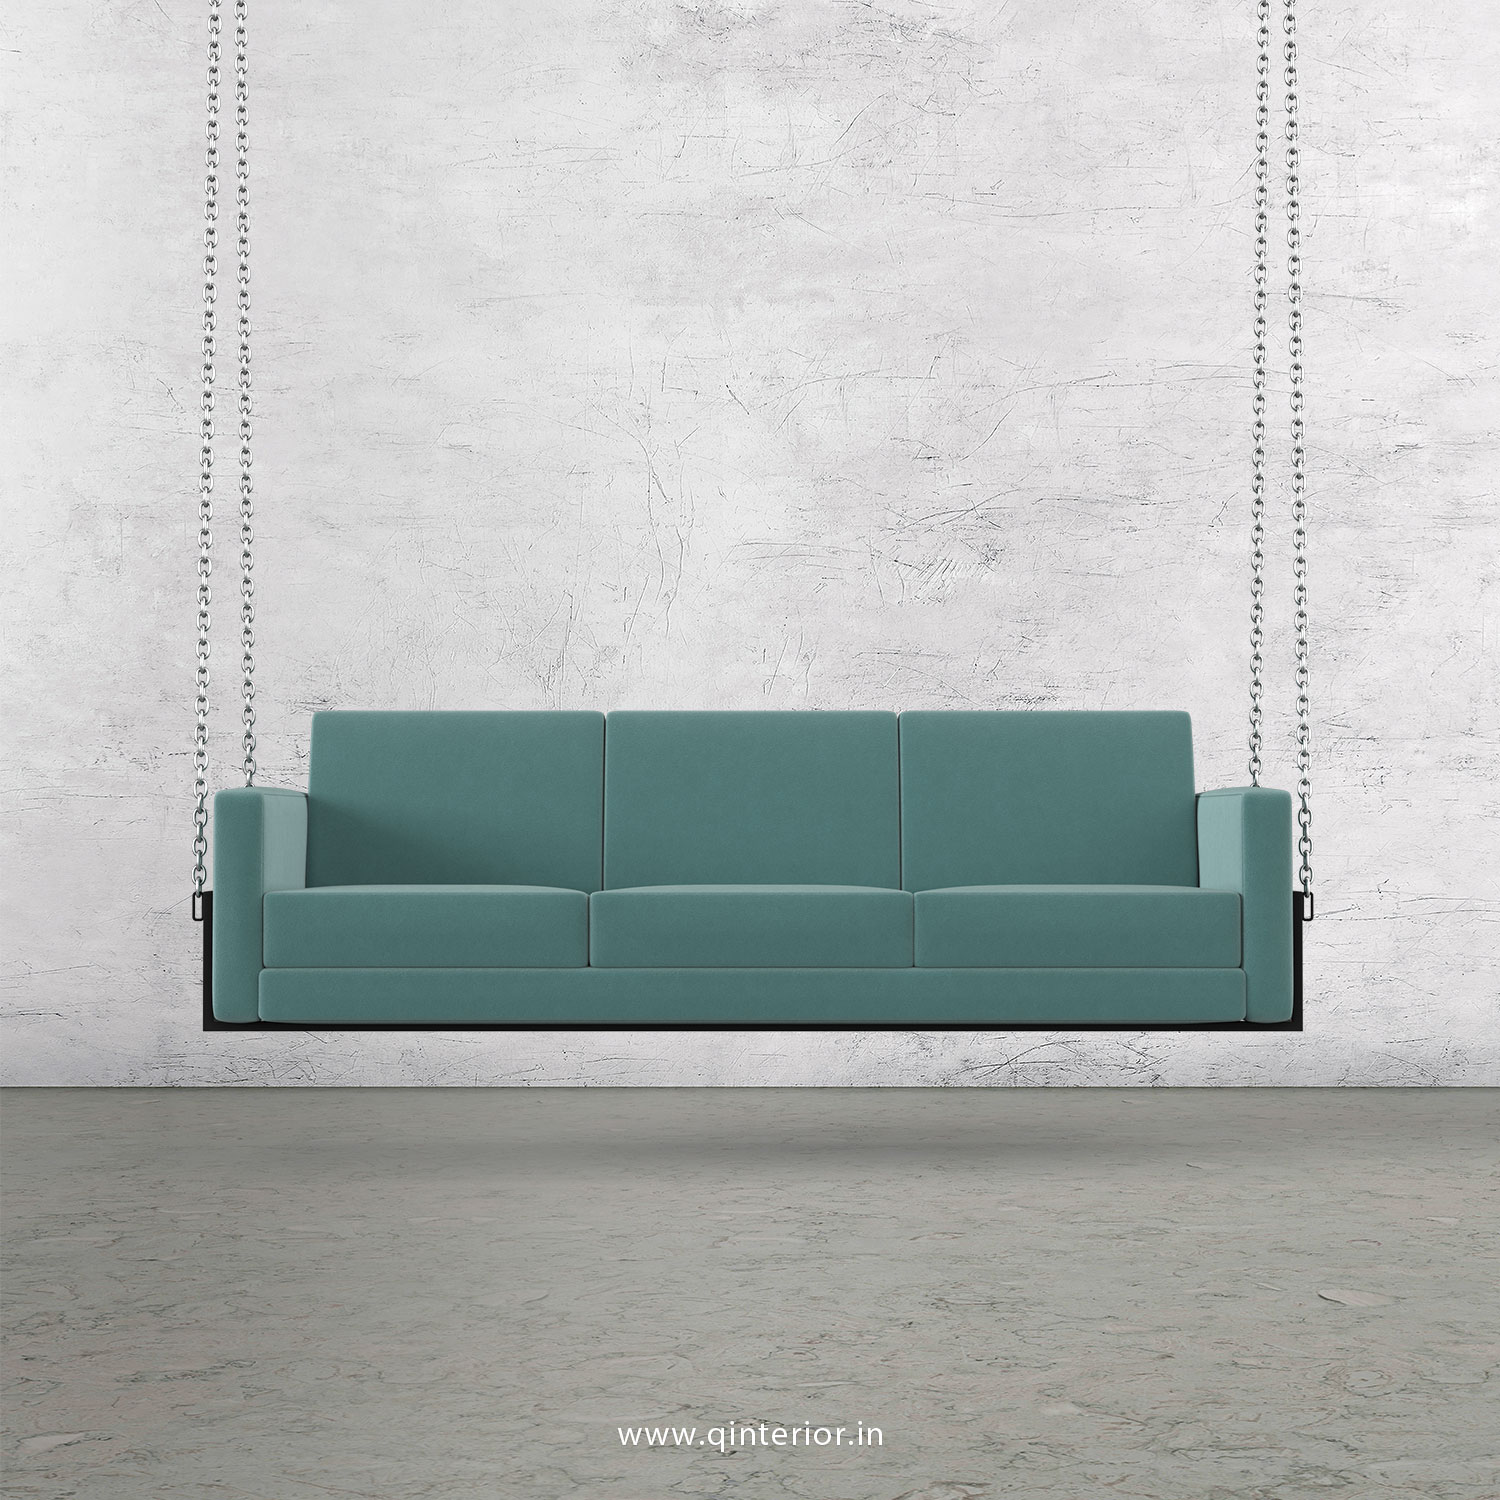 NIRVANA 3 Seater Swing Sofa in Velvet Fabric - SSF001 VL14